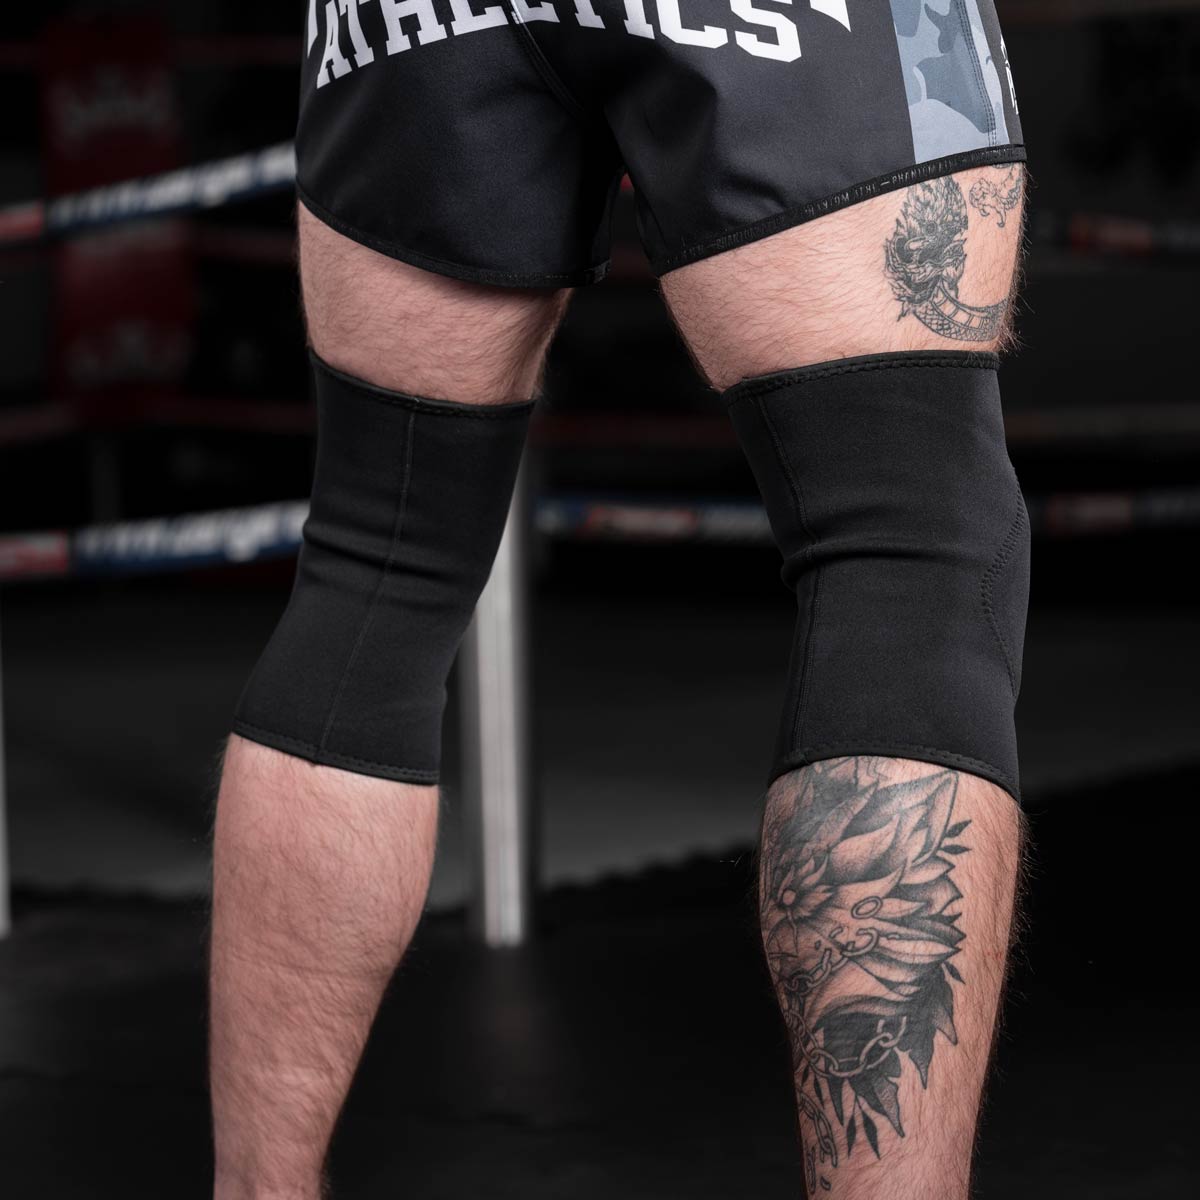 Die Rückseite der Phantom MMA Knieschützer APEX beim Kampfsporttraining